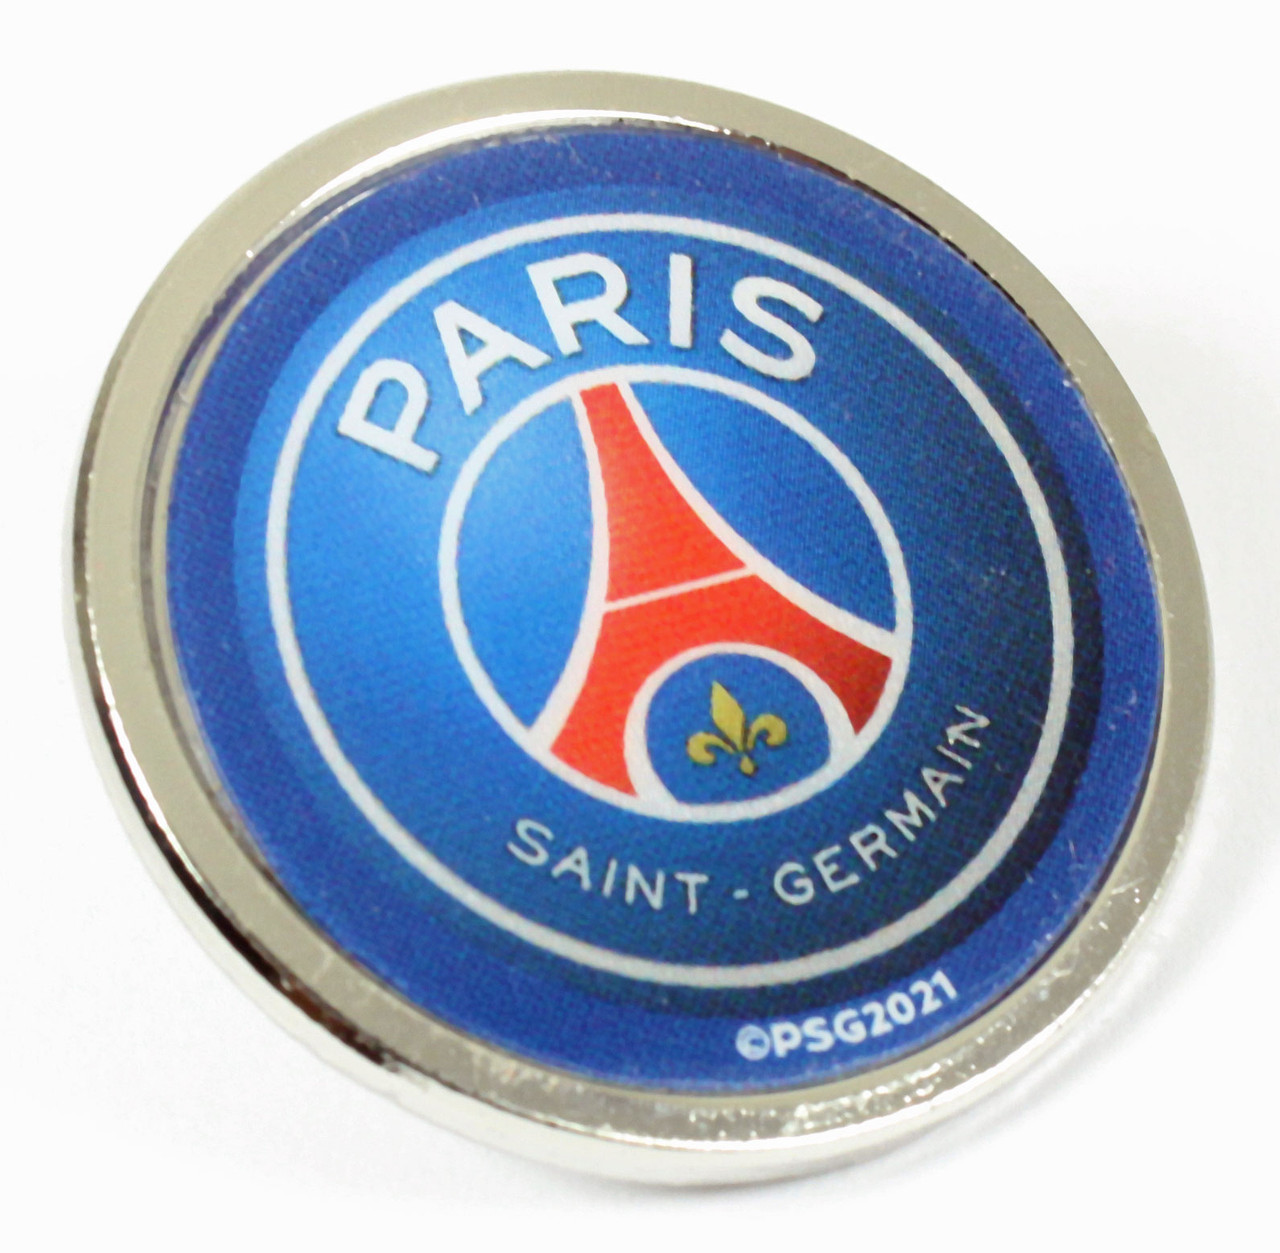 Paris Saint-Germain Fashion Accessories, PSG Gifts, Pins